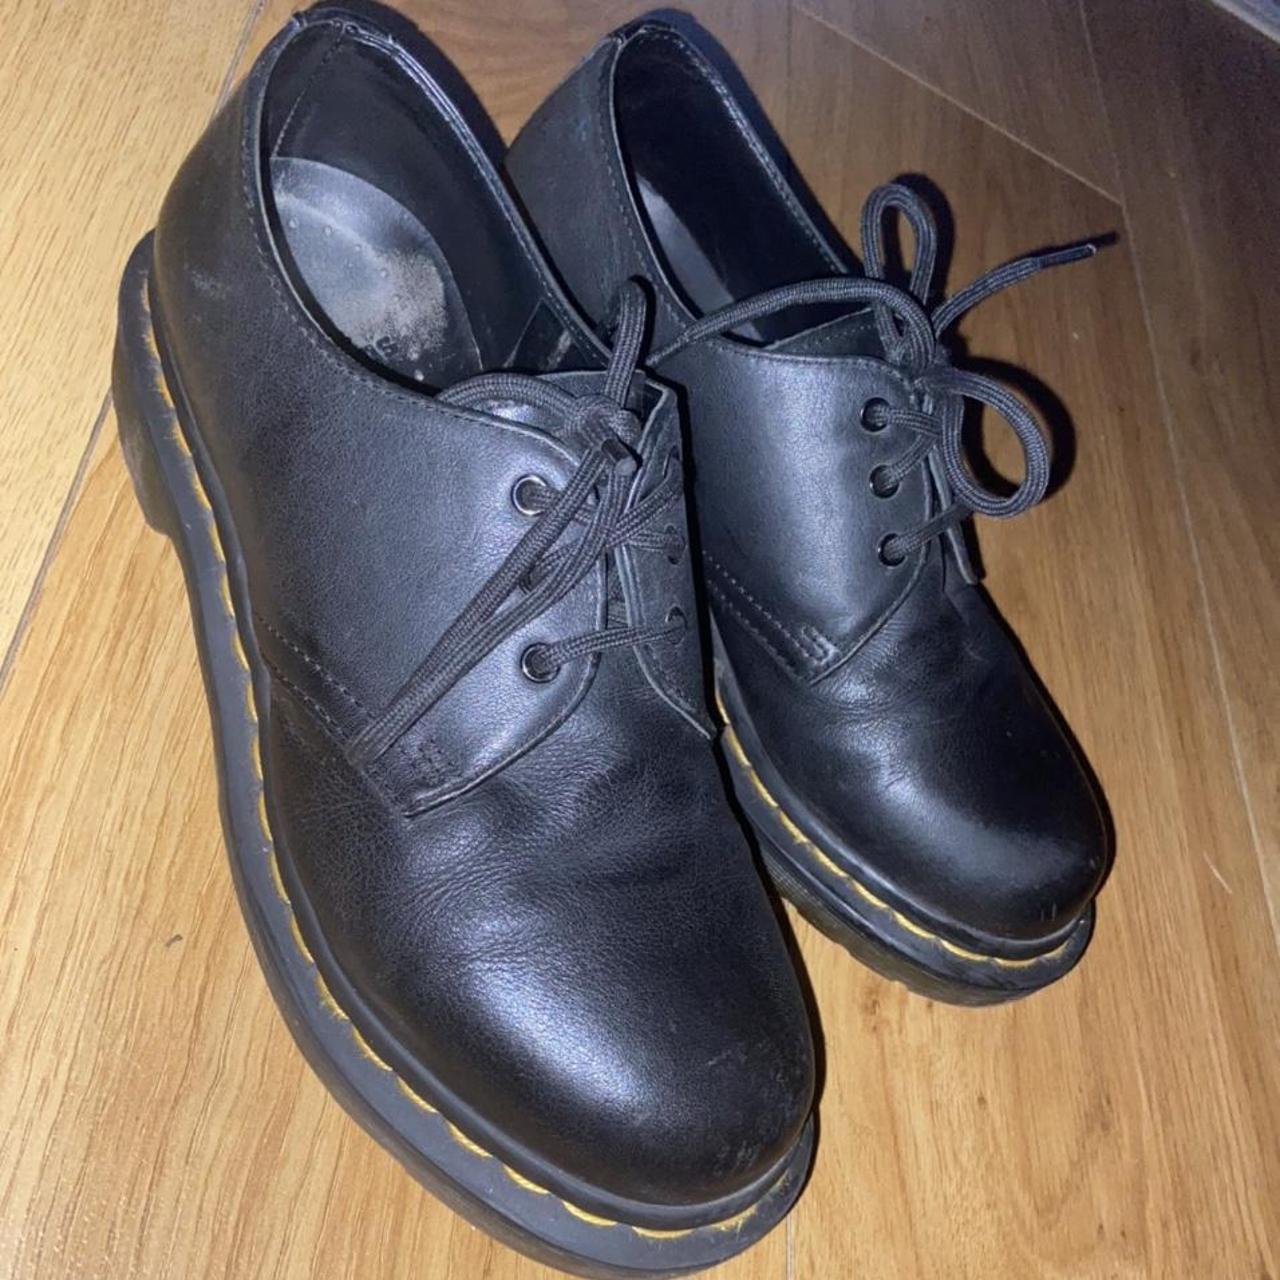 Dr Martens shoes leather black shoes lace up worn... - Depop